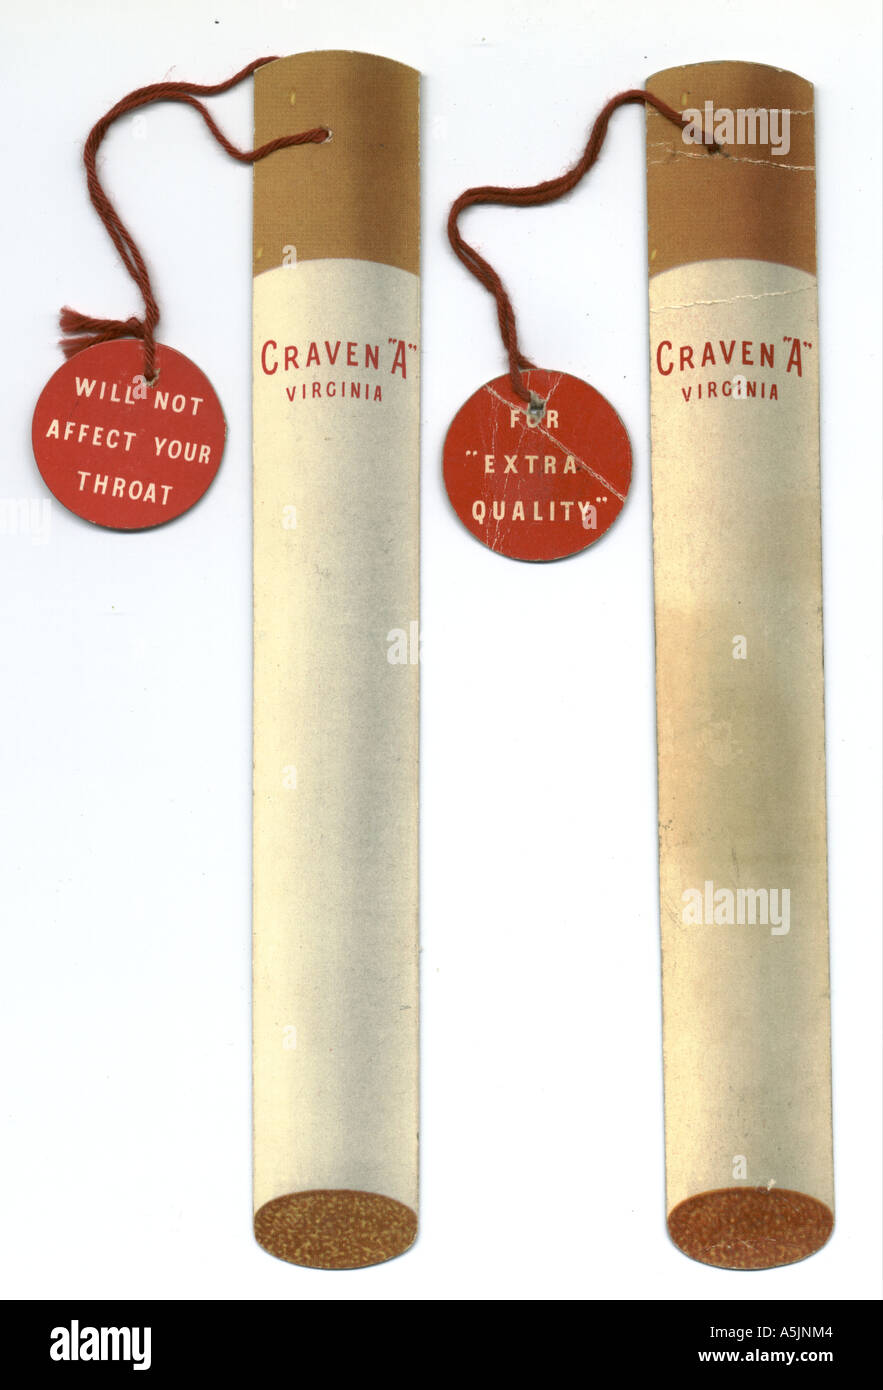 Verschenken Sie Werbung Lesezeichen für Craven 'A' Zigaretten ca. 1935 Stockfoto